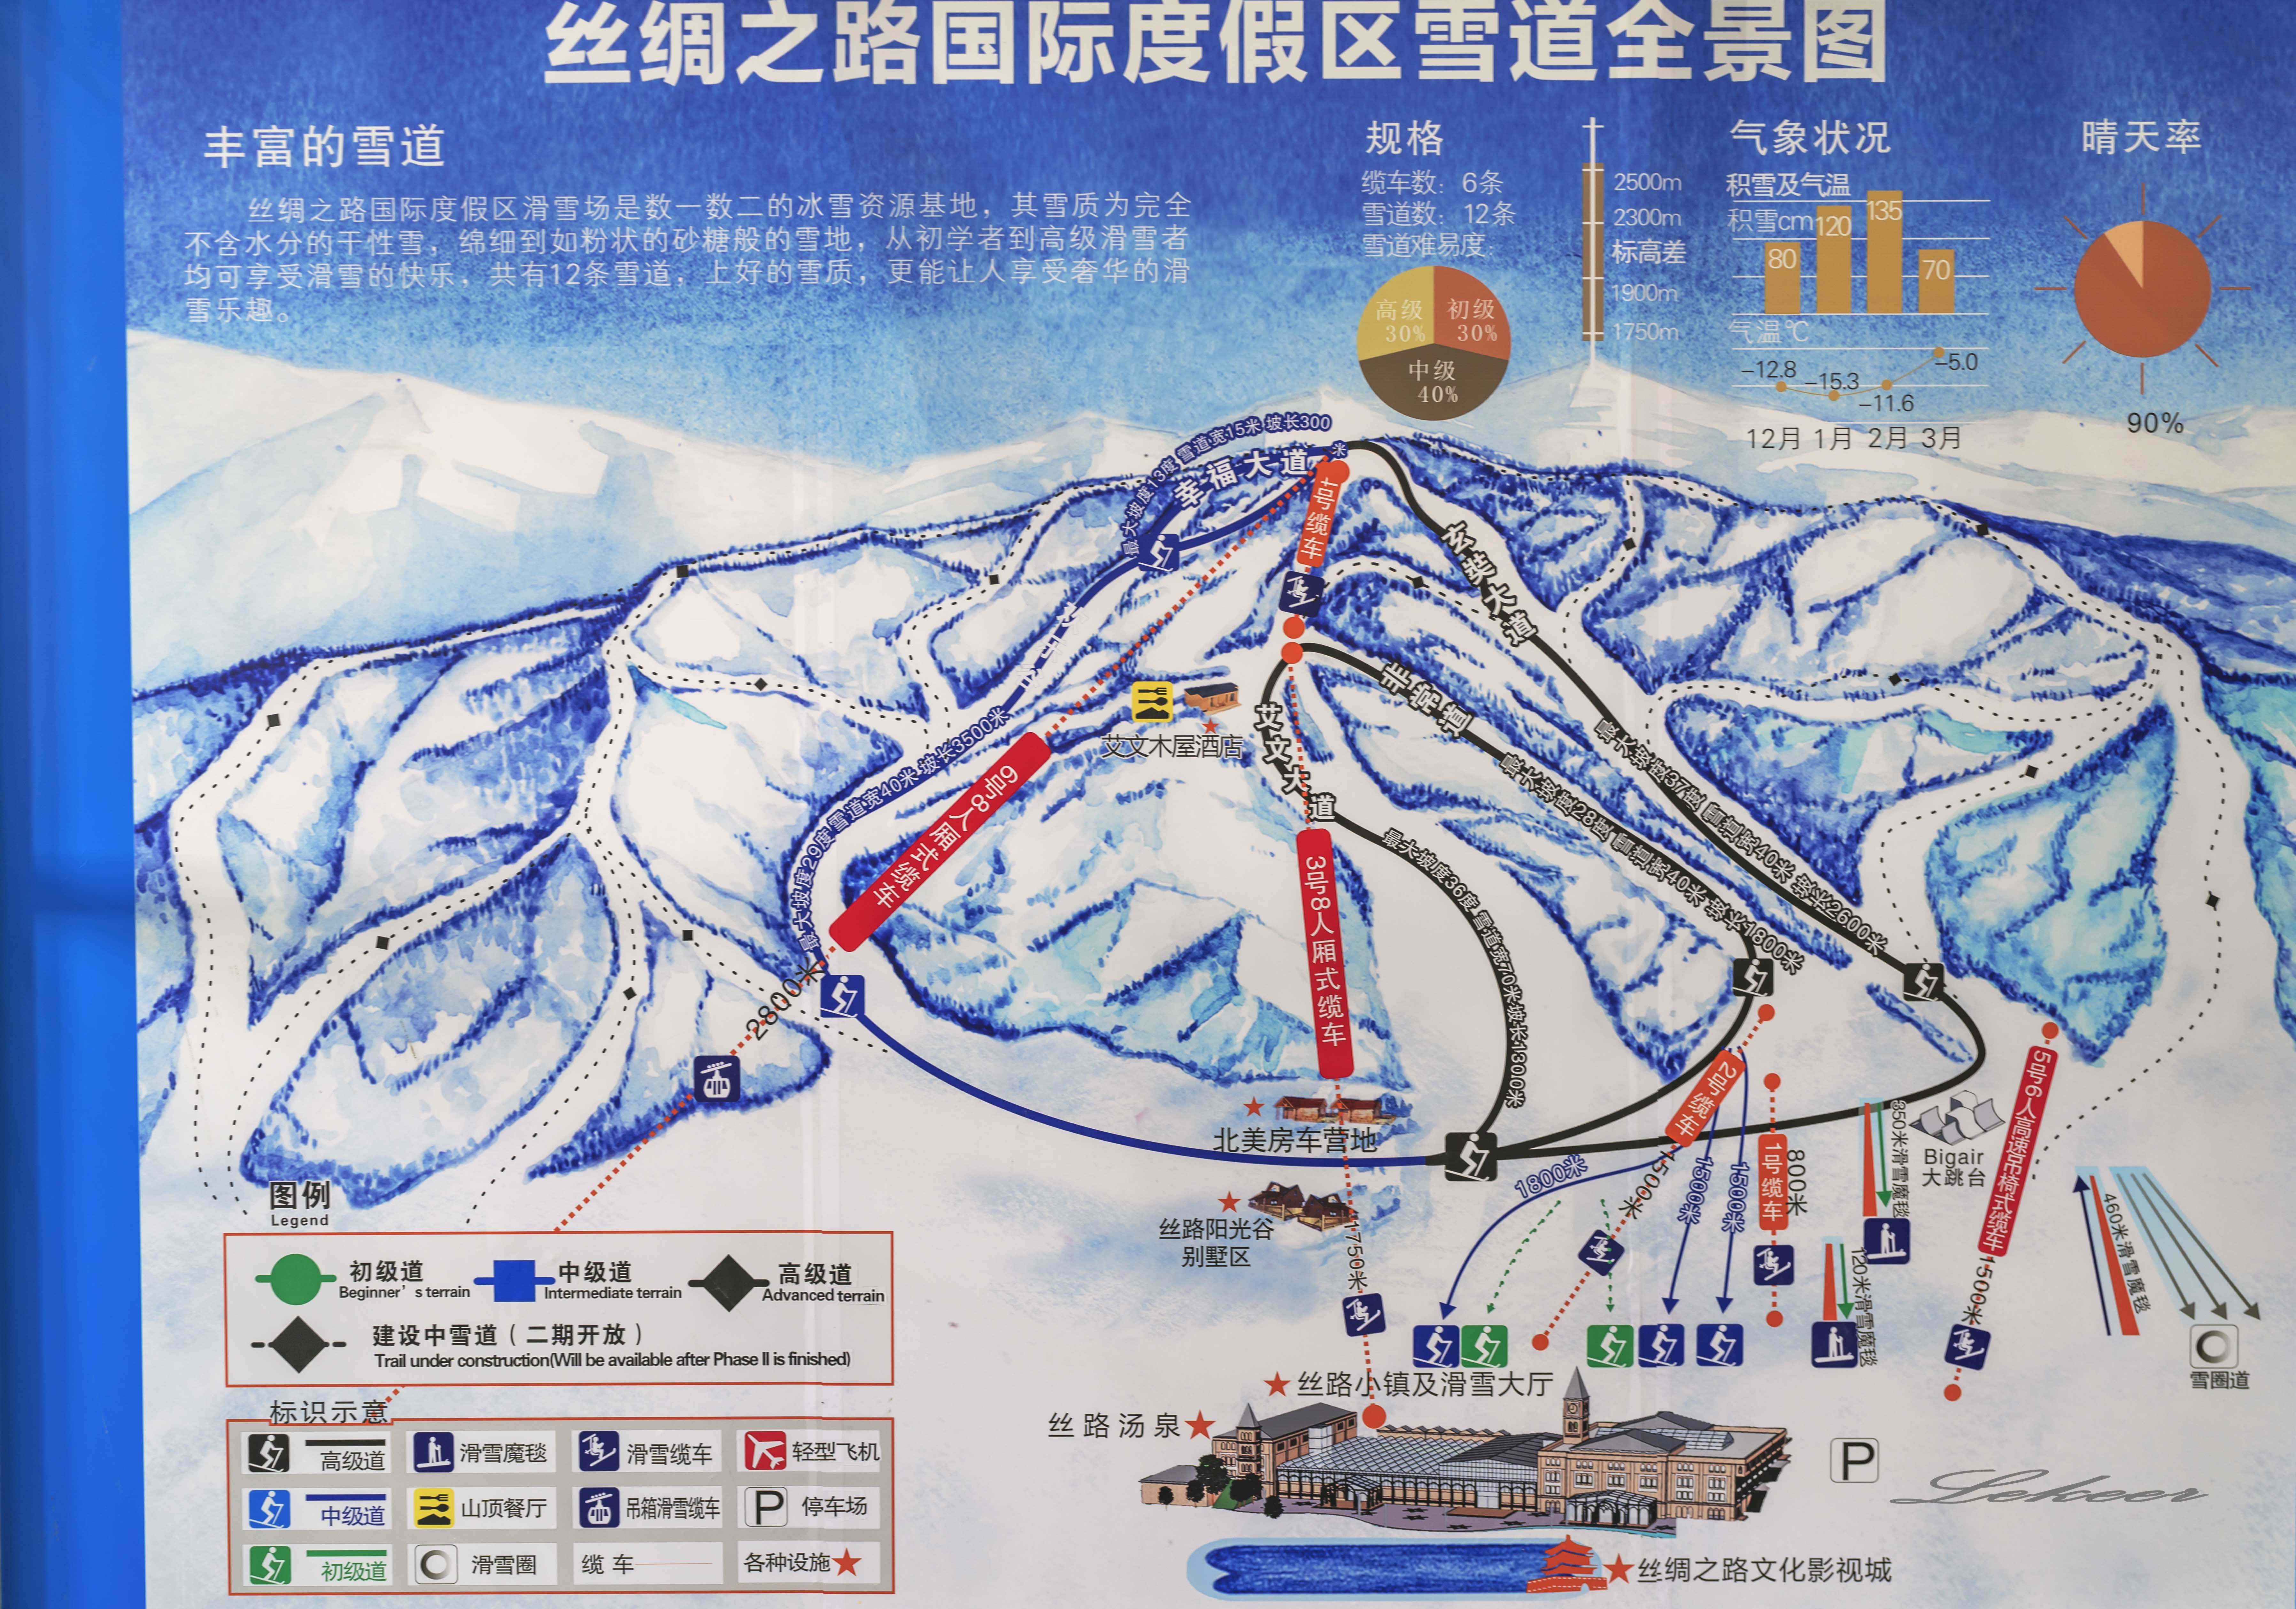 在中国顶级滑雪场尝试滑雪 居然滑成雕塑 其状惨不忍睹!